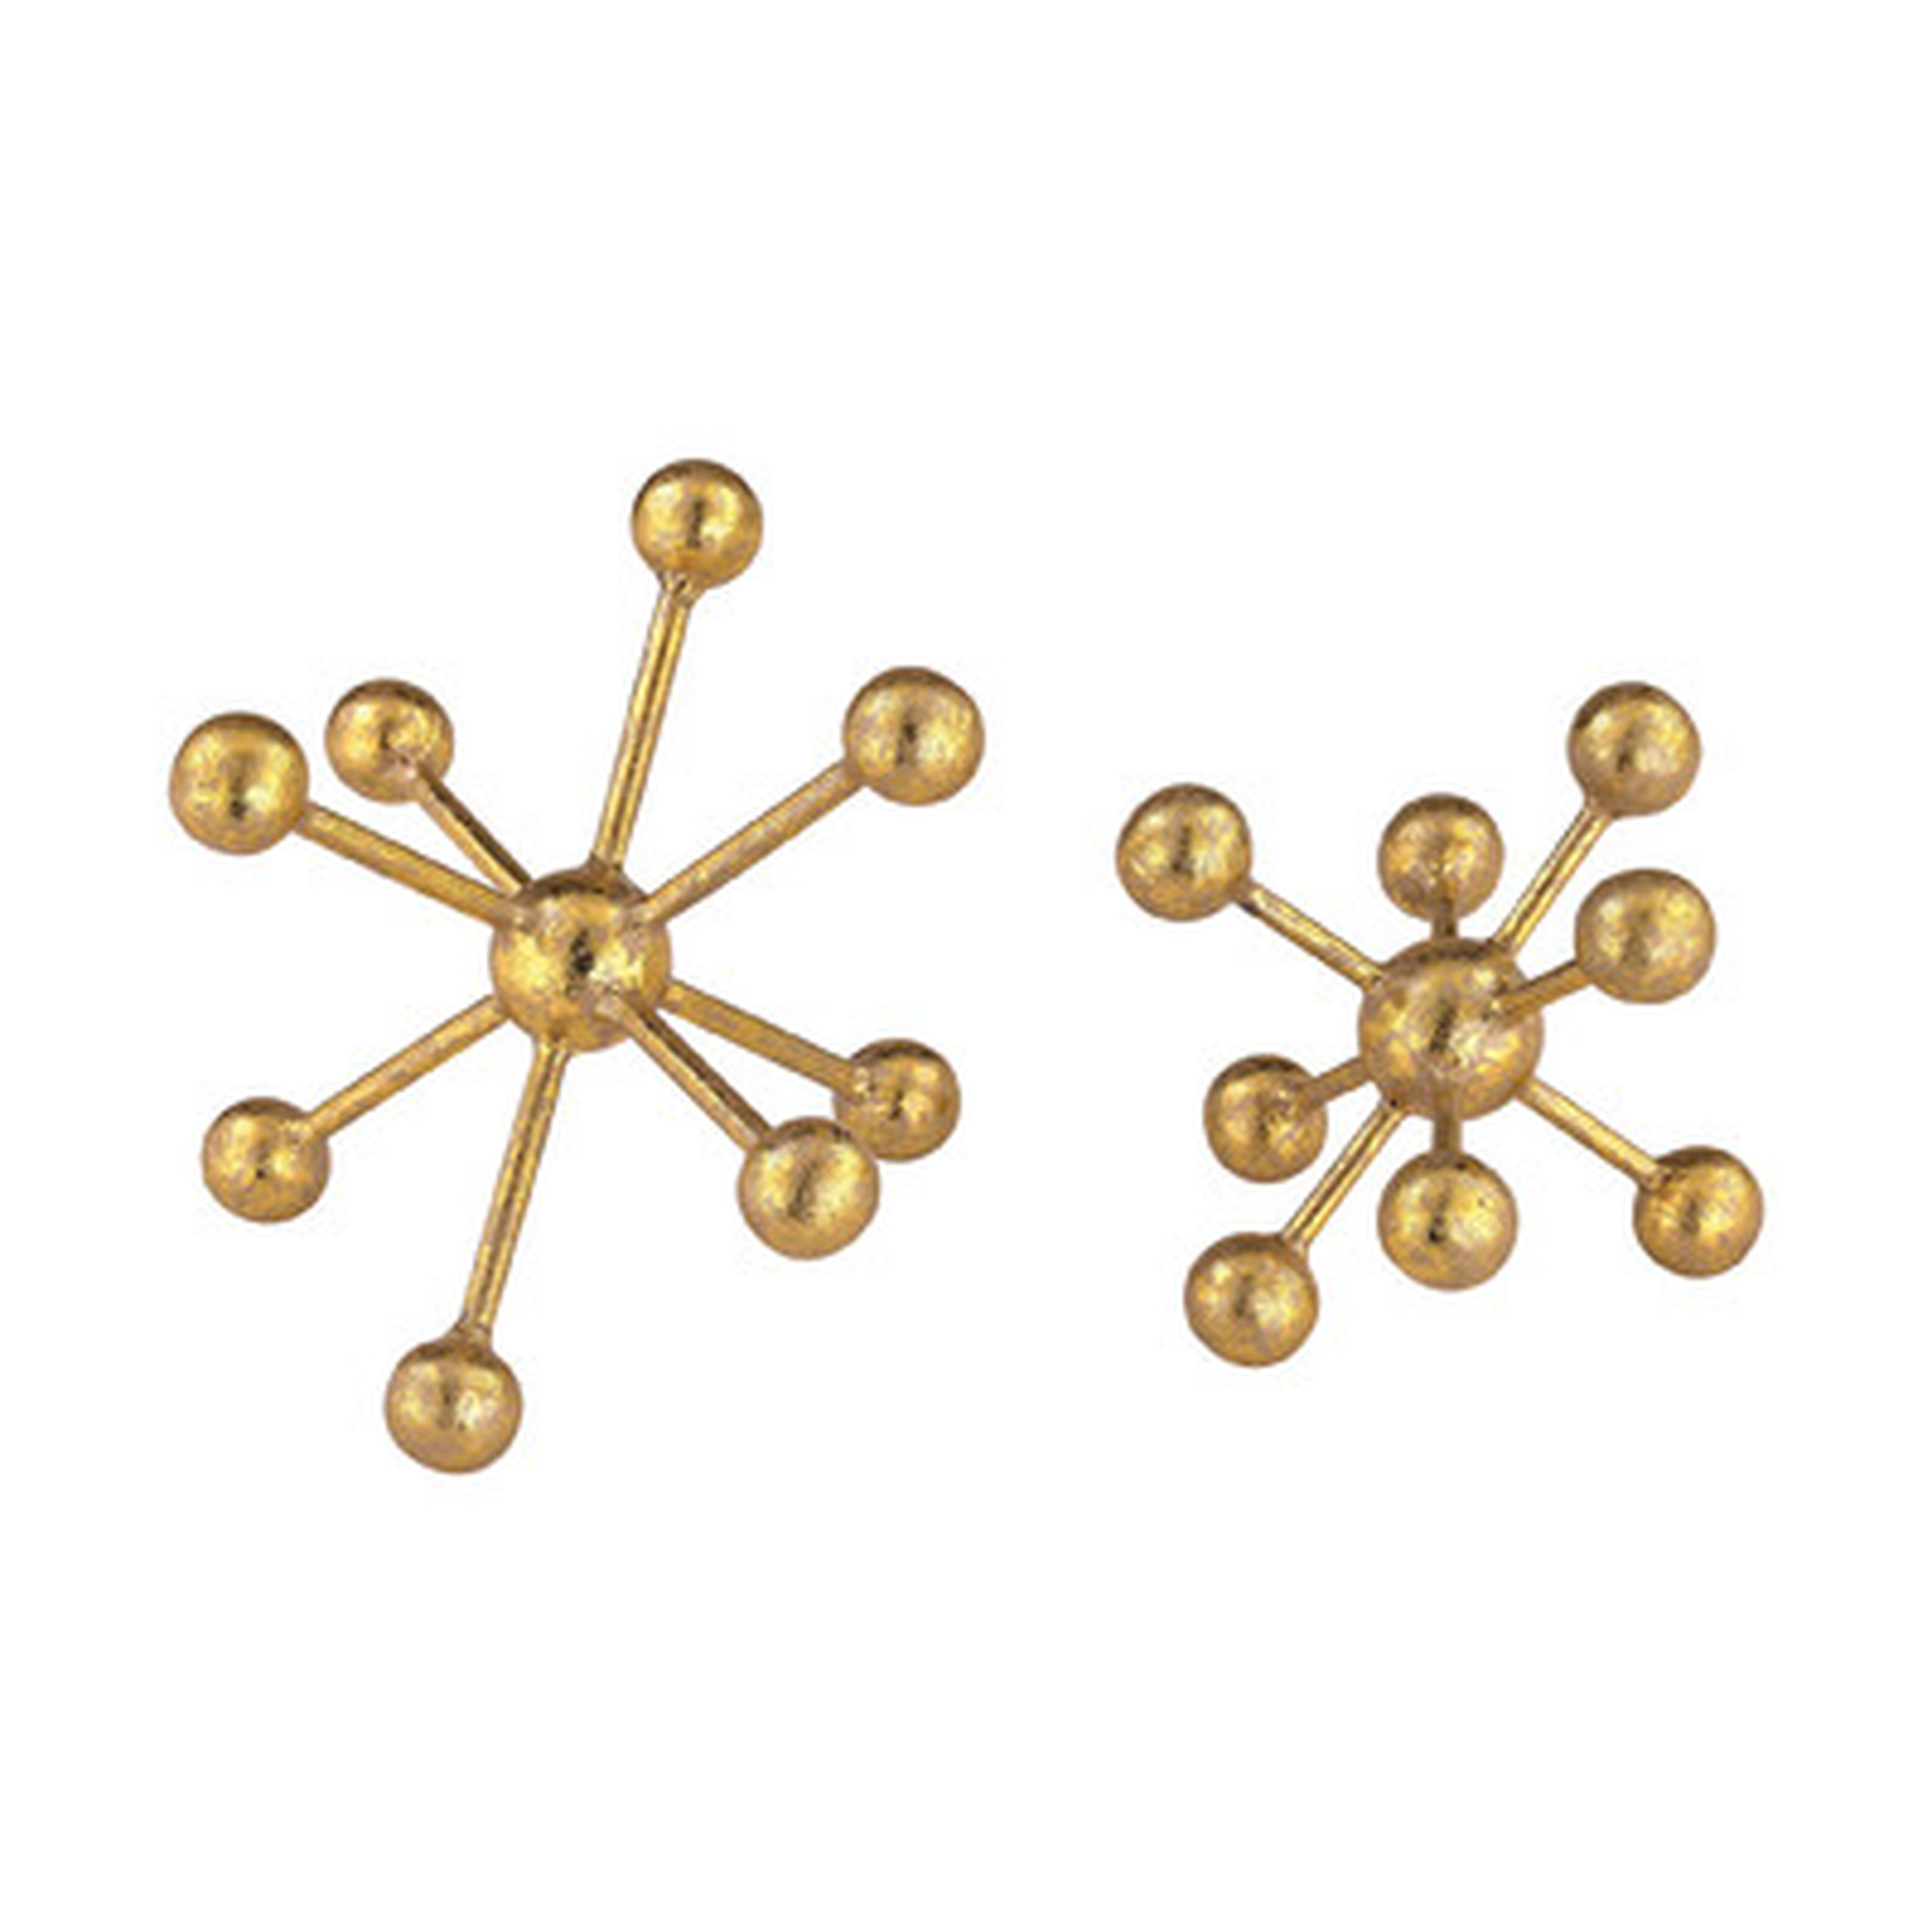 2 Piece Lang Molecules Sculpture Set - AllModern